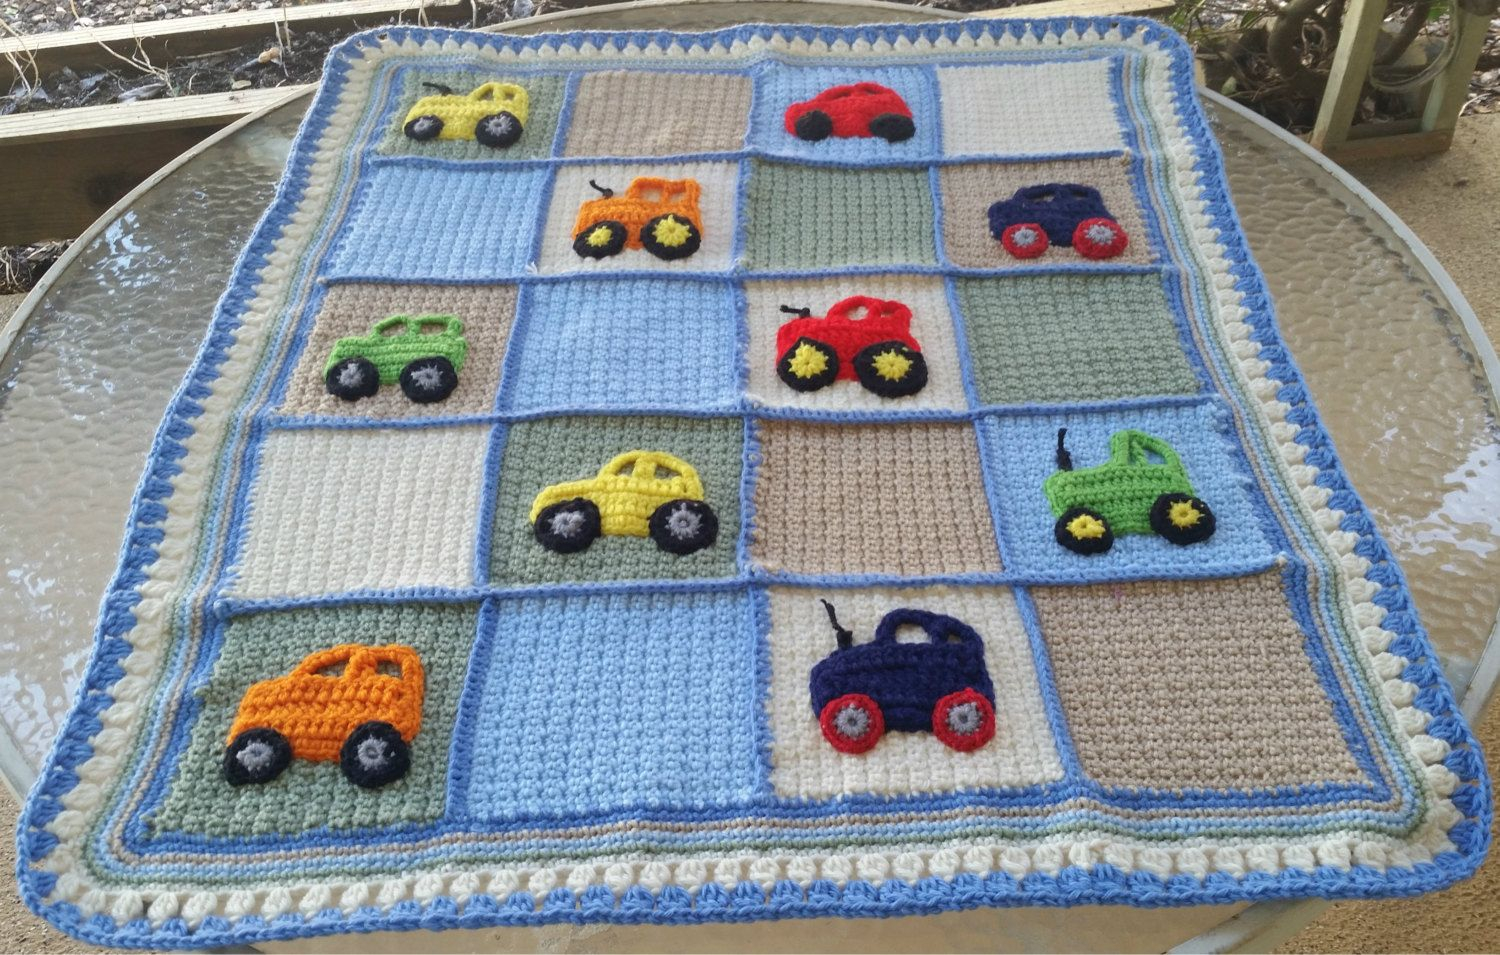 Baby Boy Crochet Blanket Patterns Crochet Ba Blanket Car Applique Blanket Tractor Applique Blanket